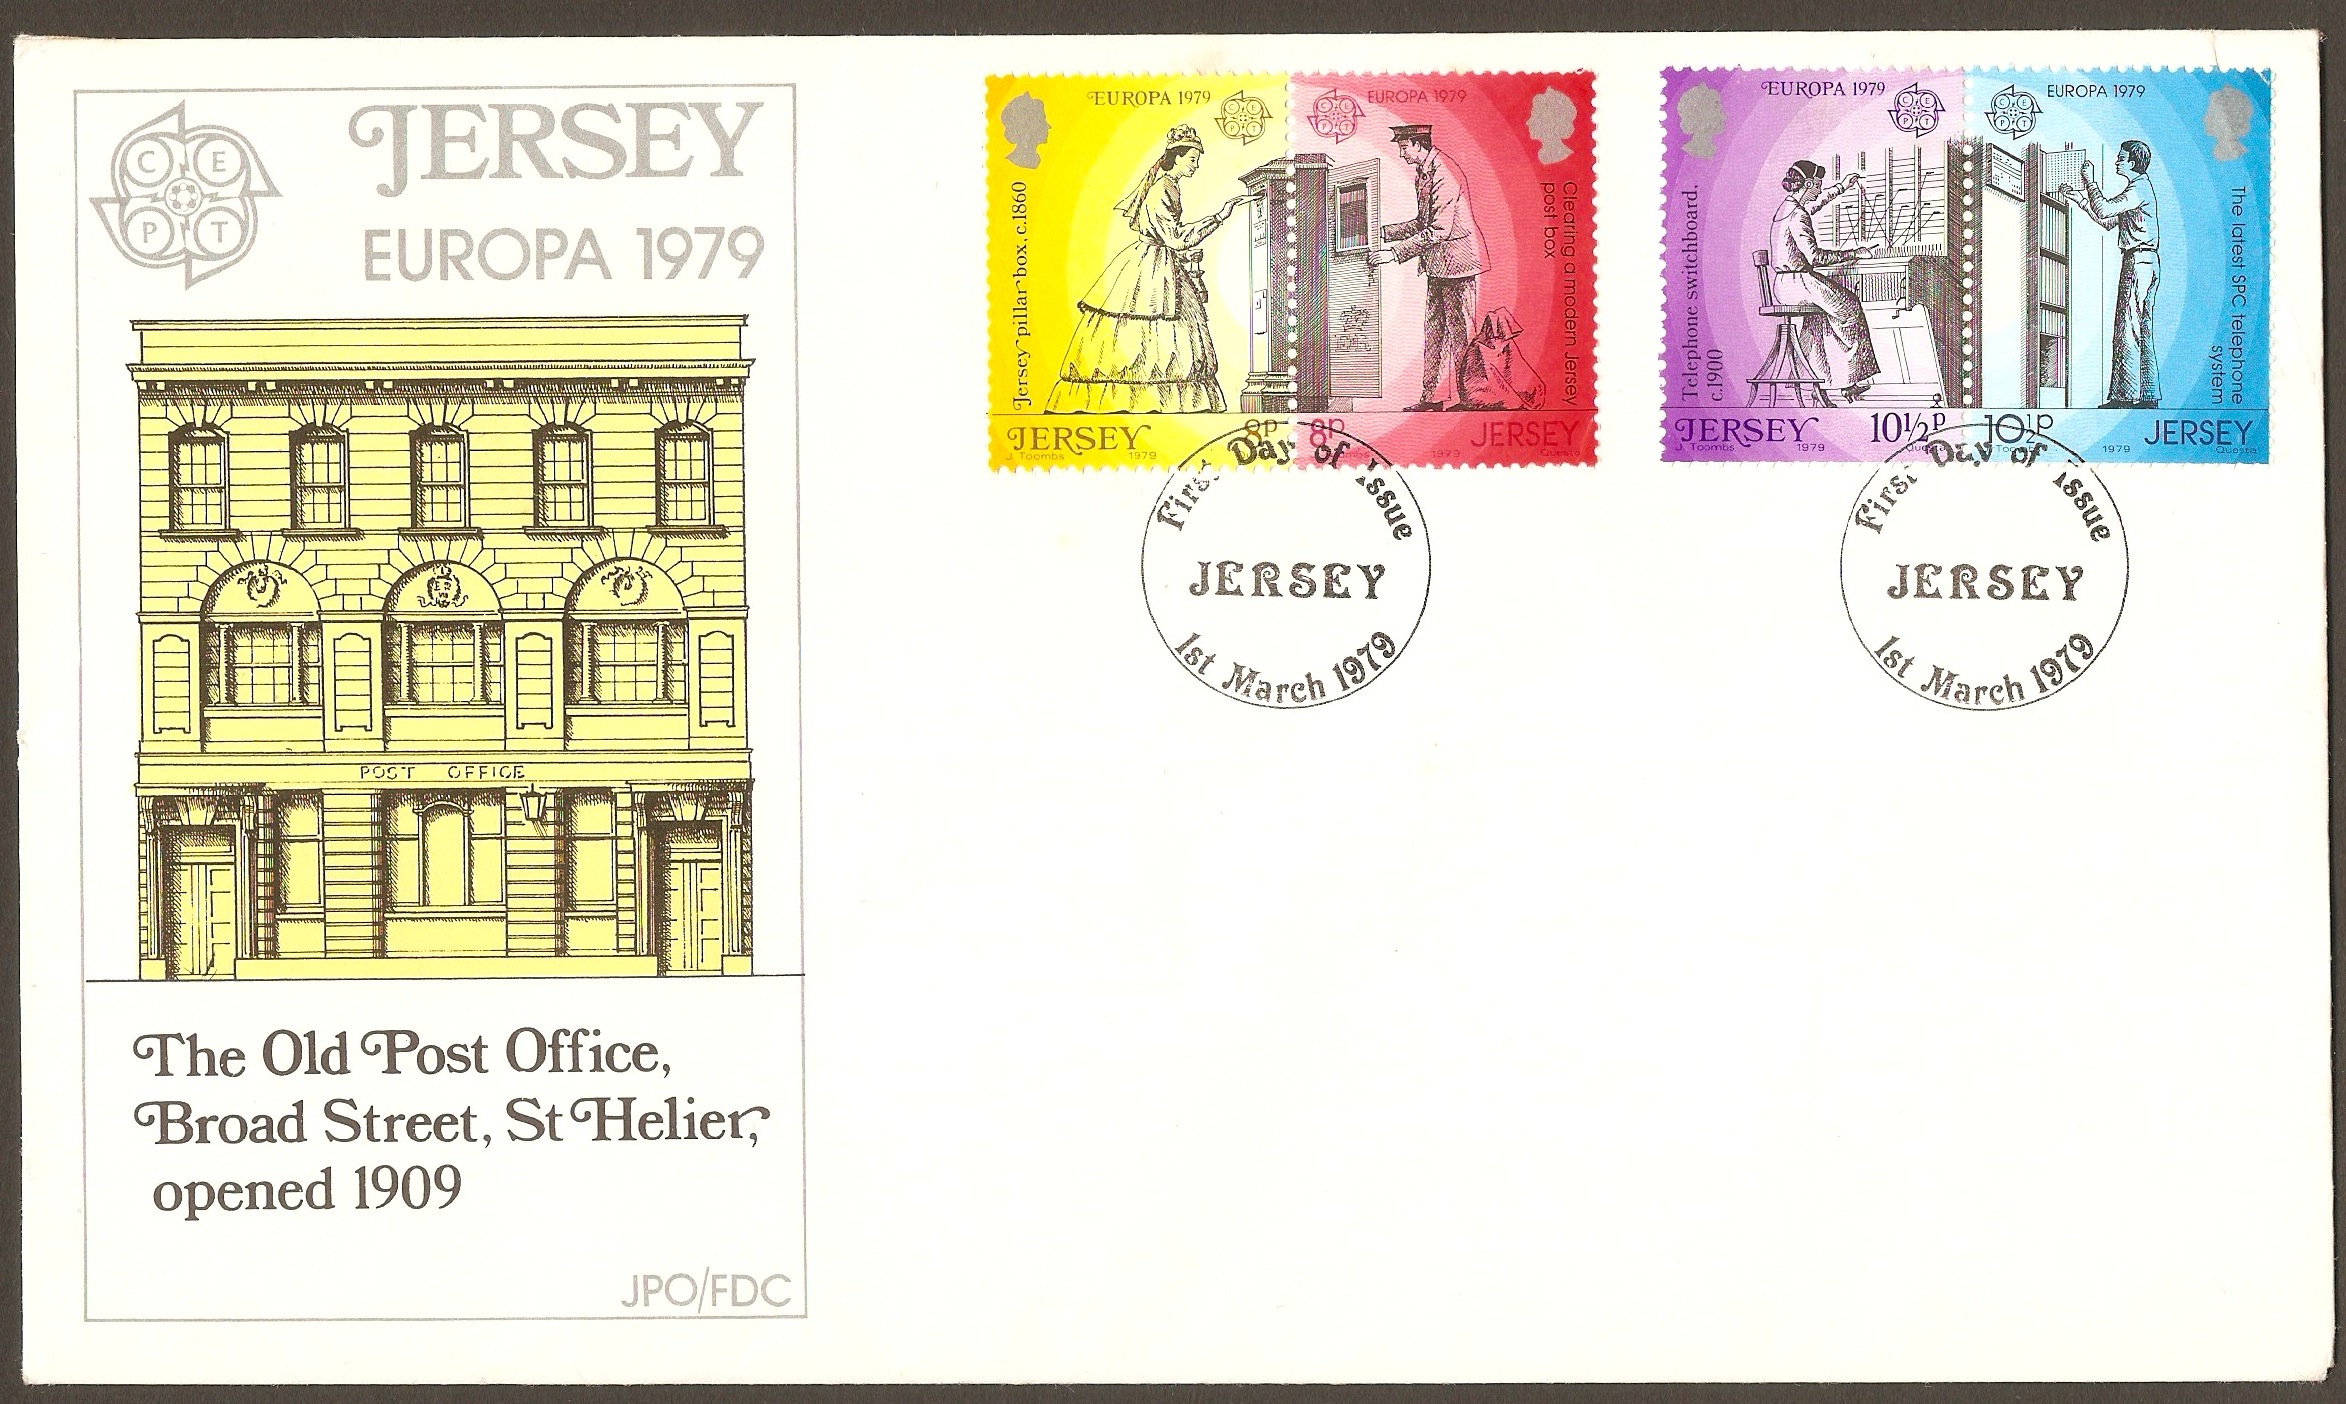 Jersey 1979 Europa - Communications set FDC.